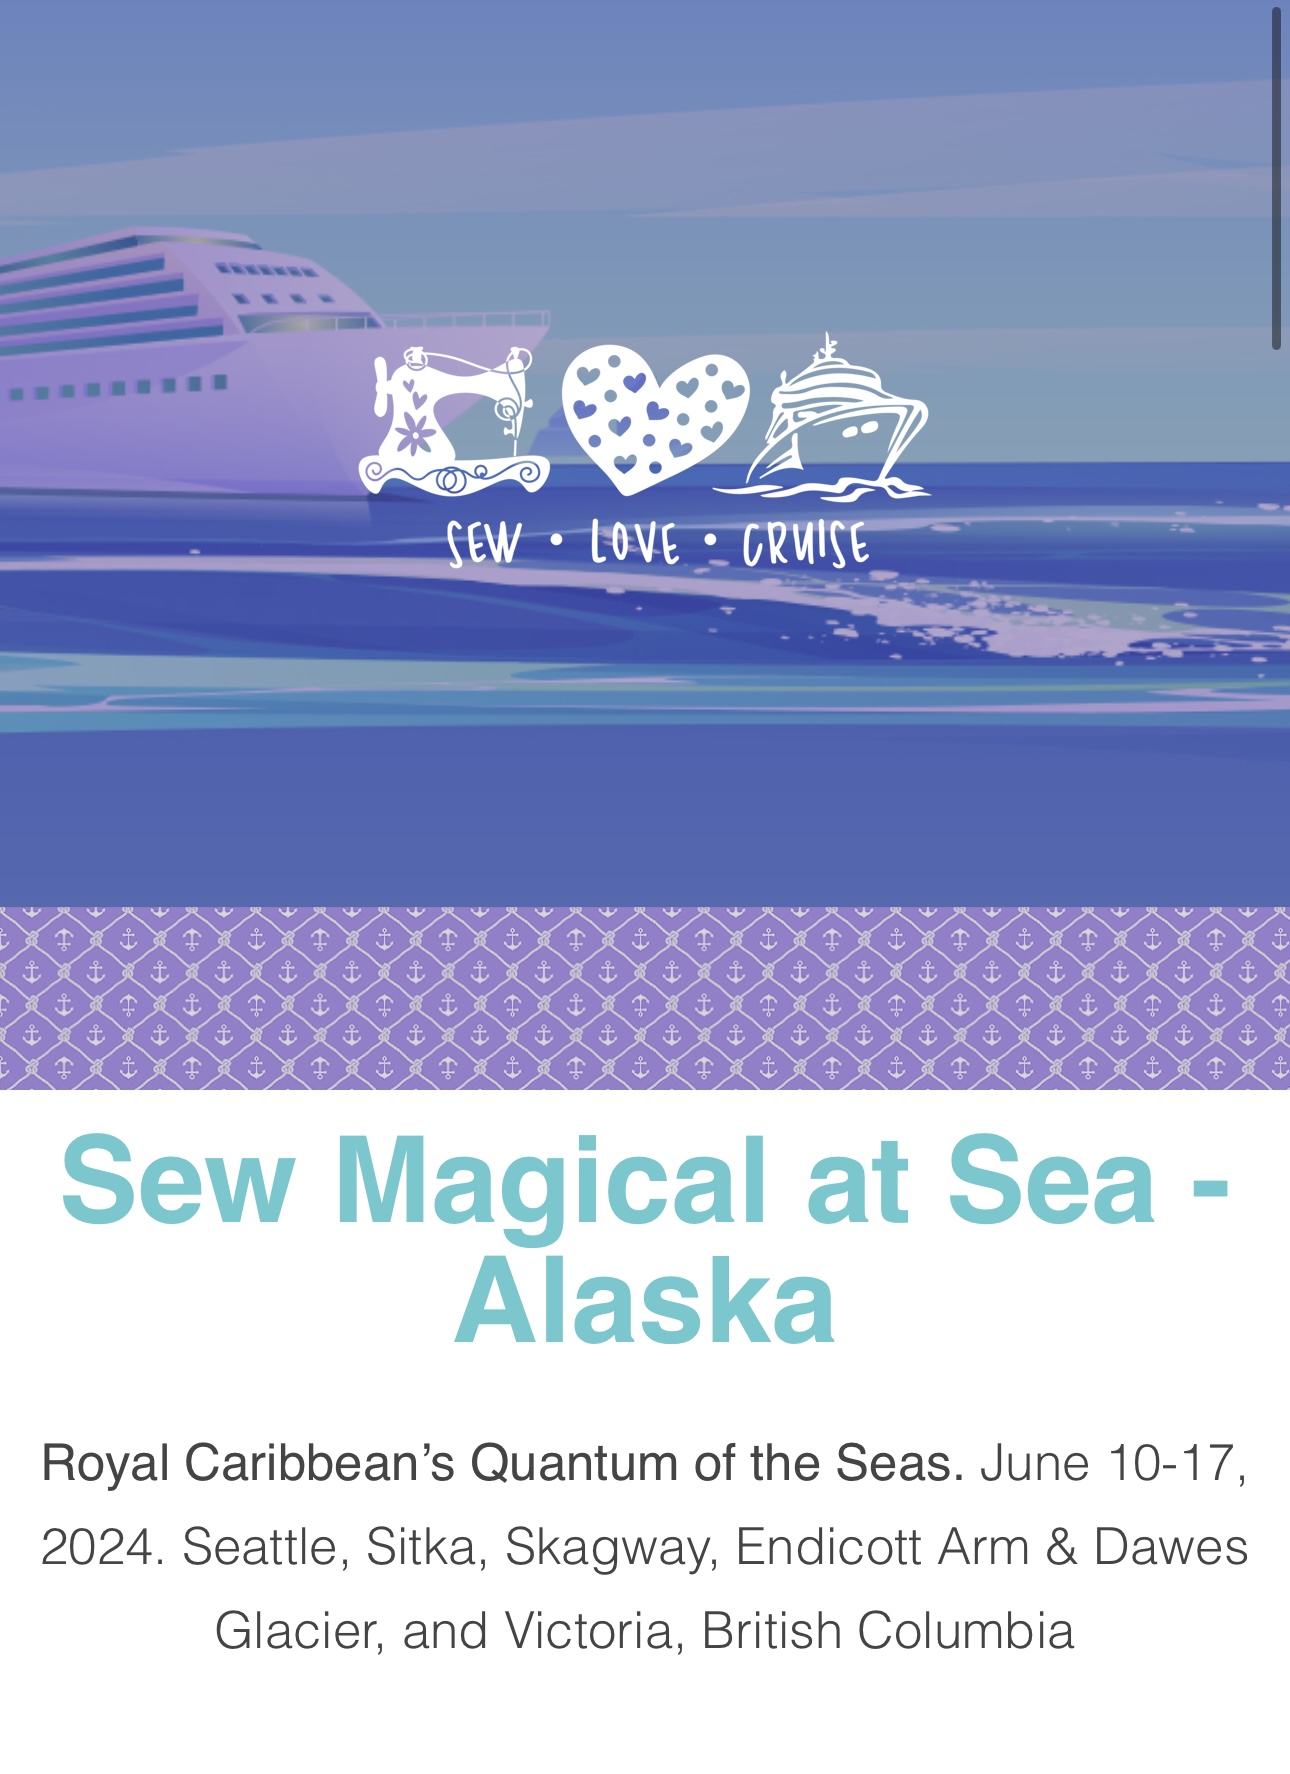 Sew Magical at Sea (Alaska Jun ’24) – Cabin Room Deposit